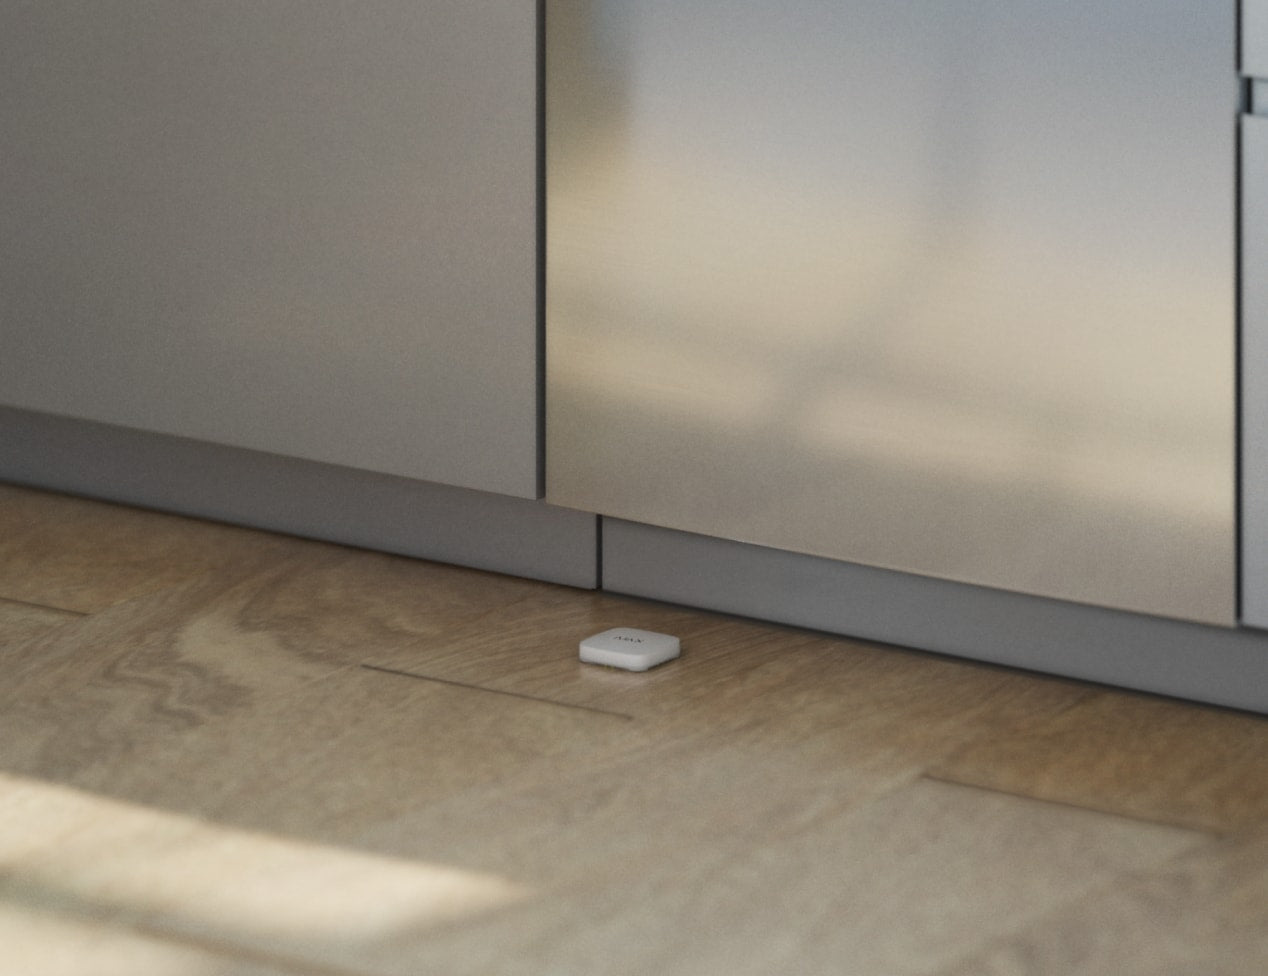 LeaksProtect Jeweller rilevatore allagamenti wireless bianco in cucina vicino alla lavastoviglie